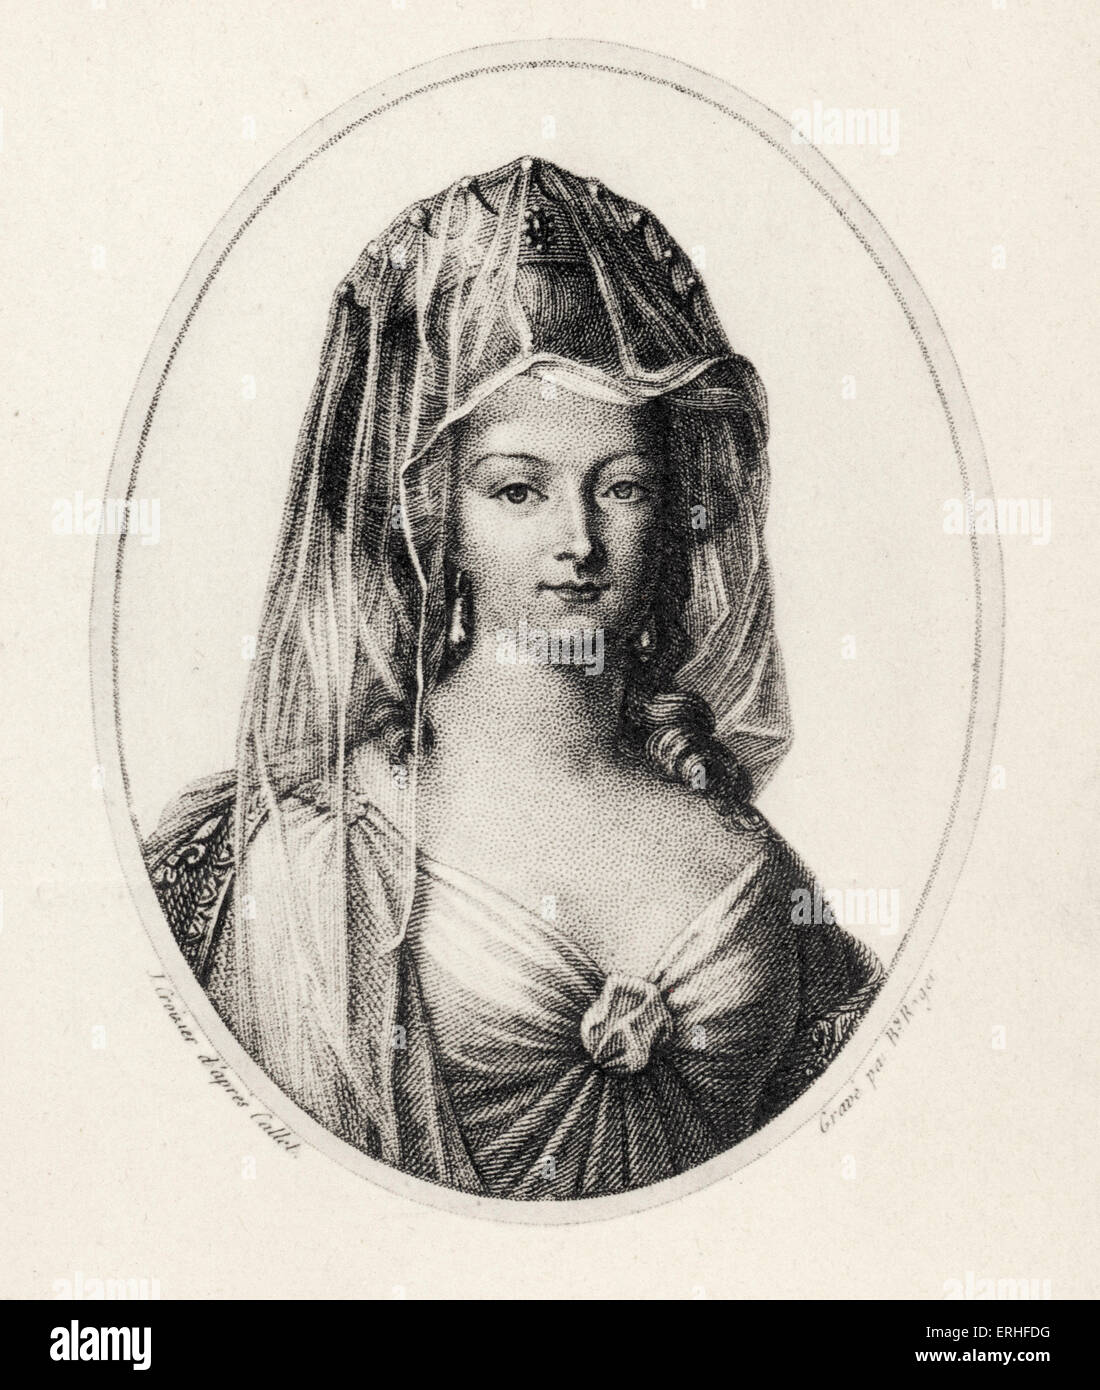 Königin Marie Antoinette von Österreich - Porträt mit Krone.  Verheiratet mit Ludwig XIV.  Tochter von Kaiser Francois ich Stockfoto